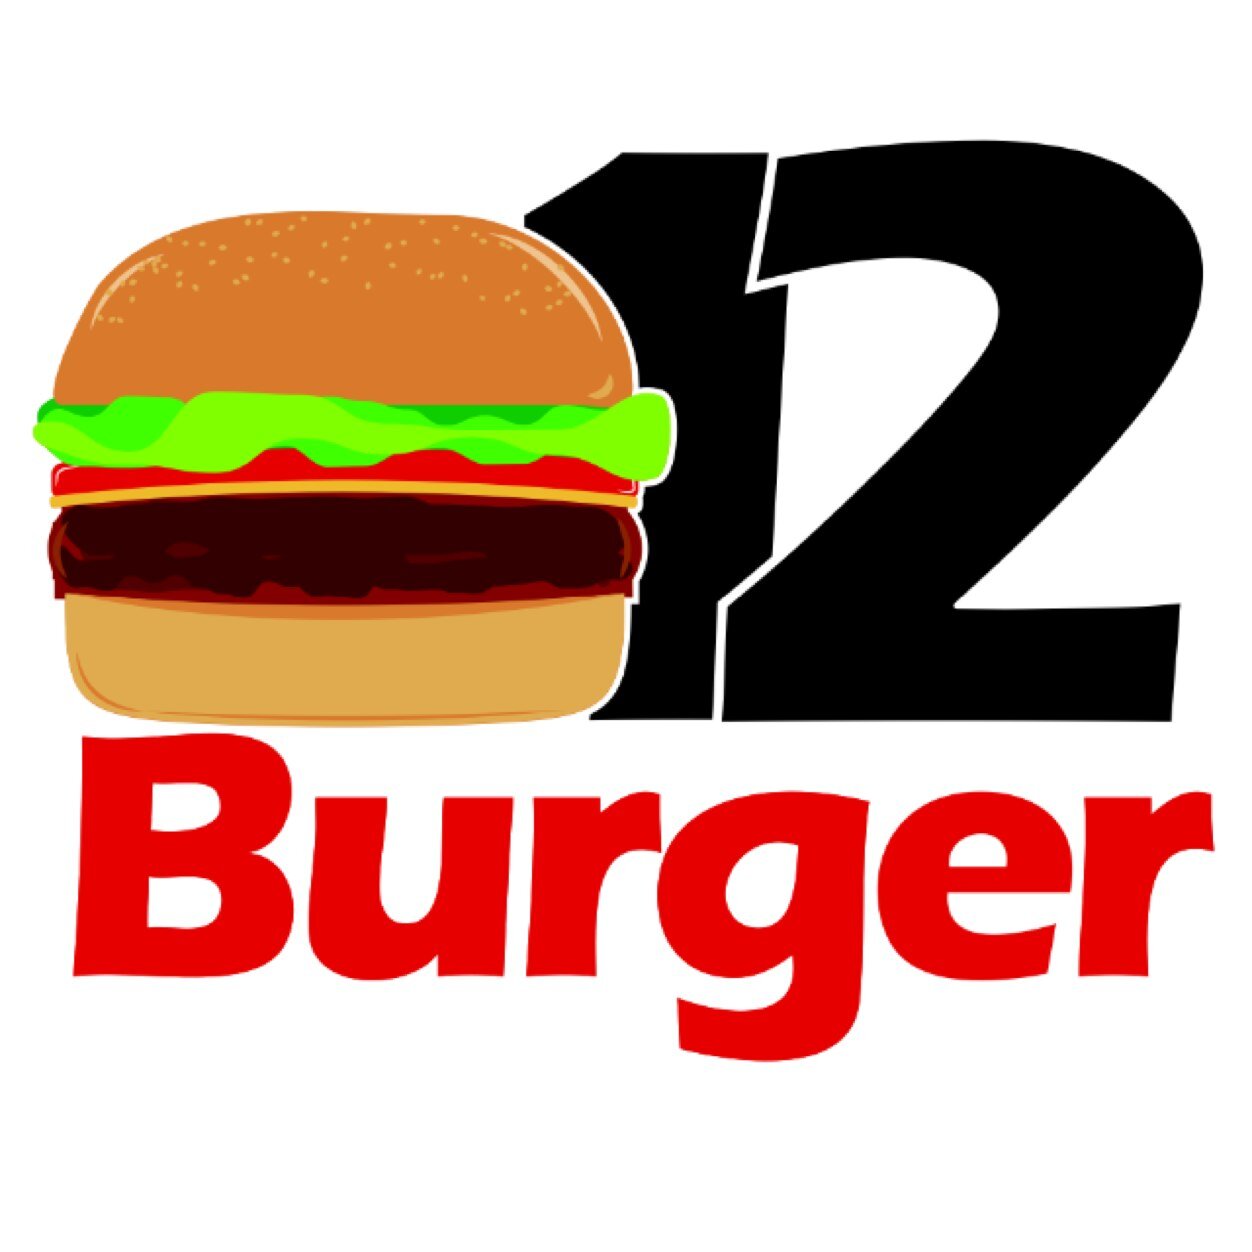 12burger | ١٢برجر